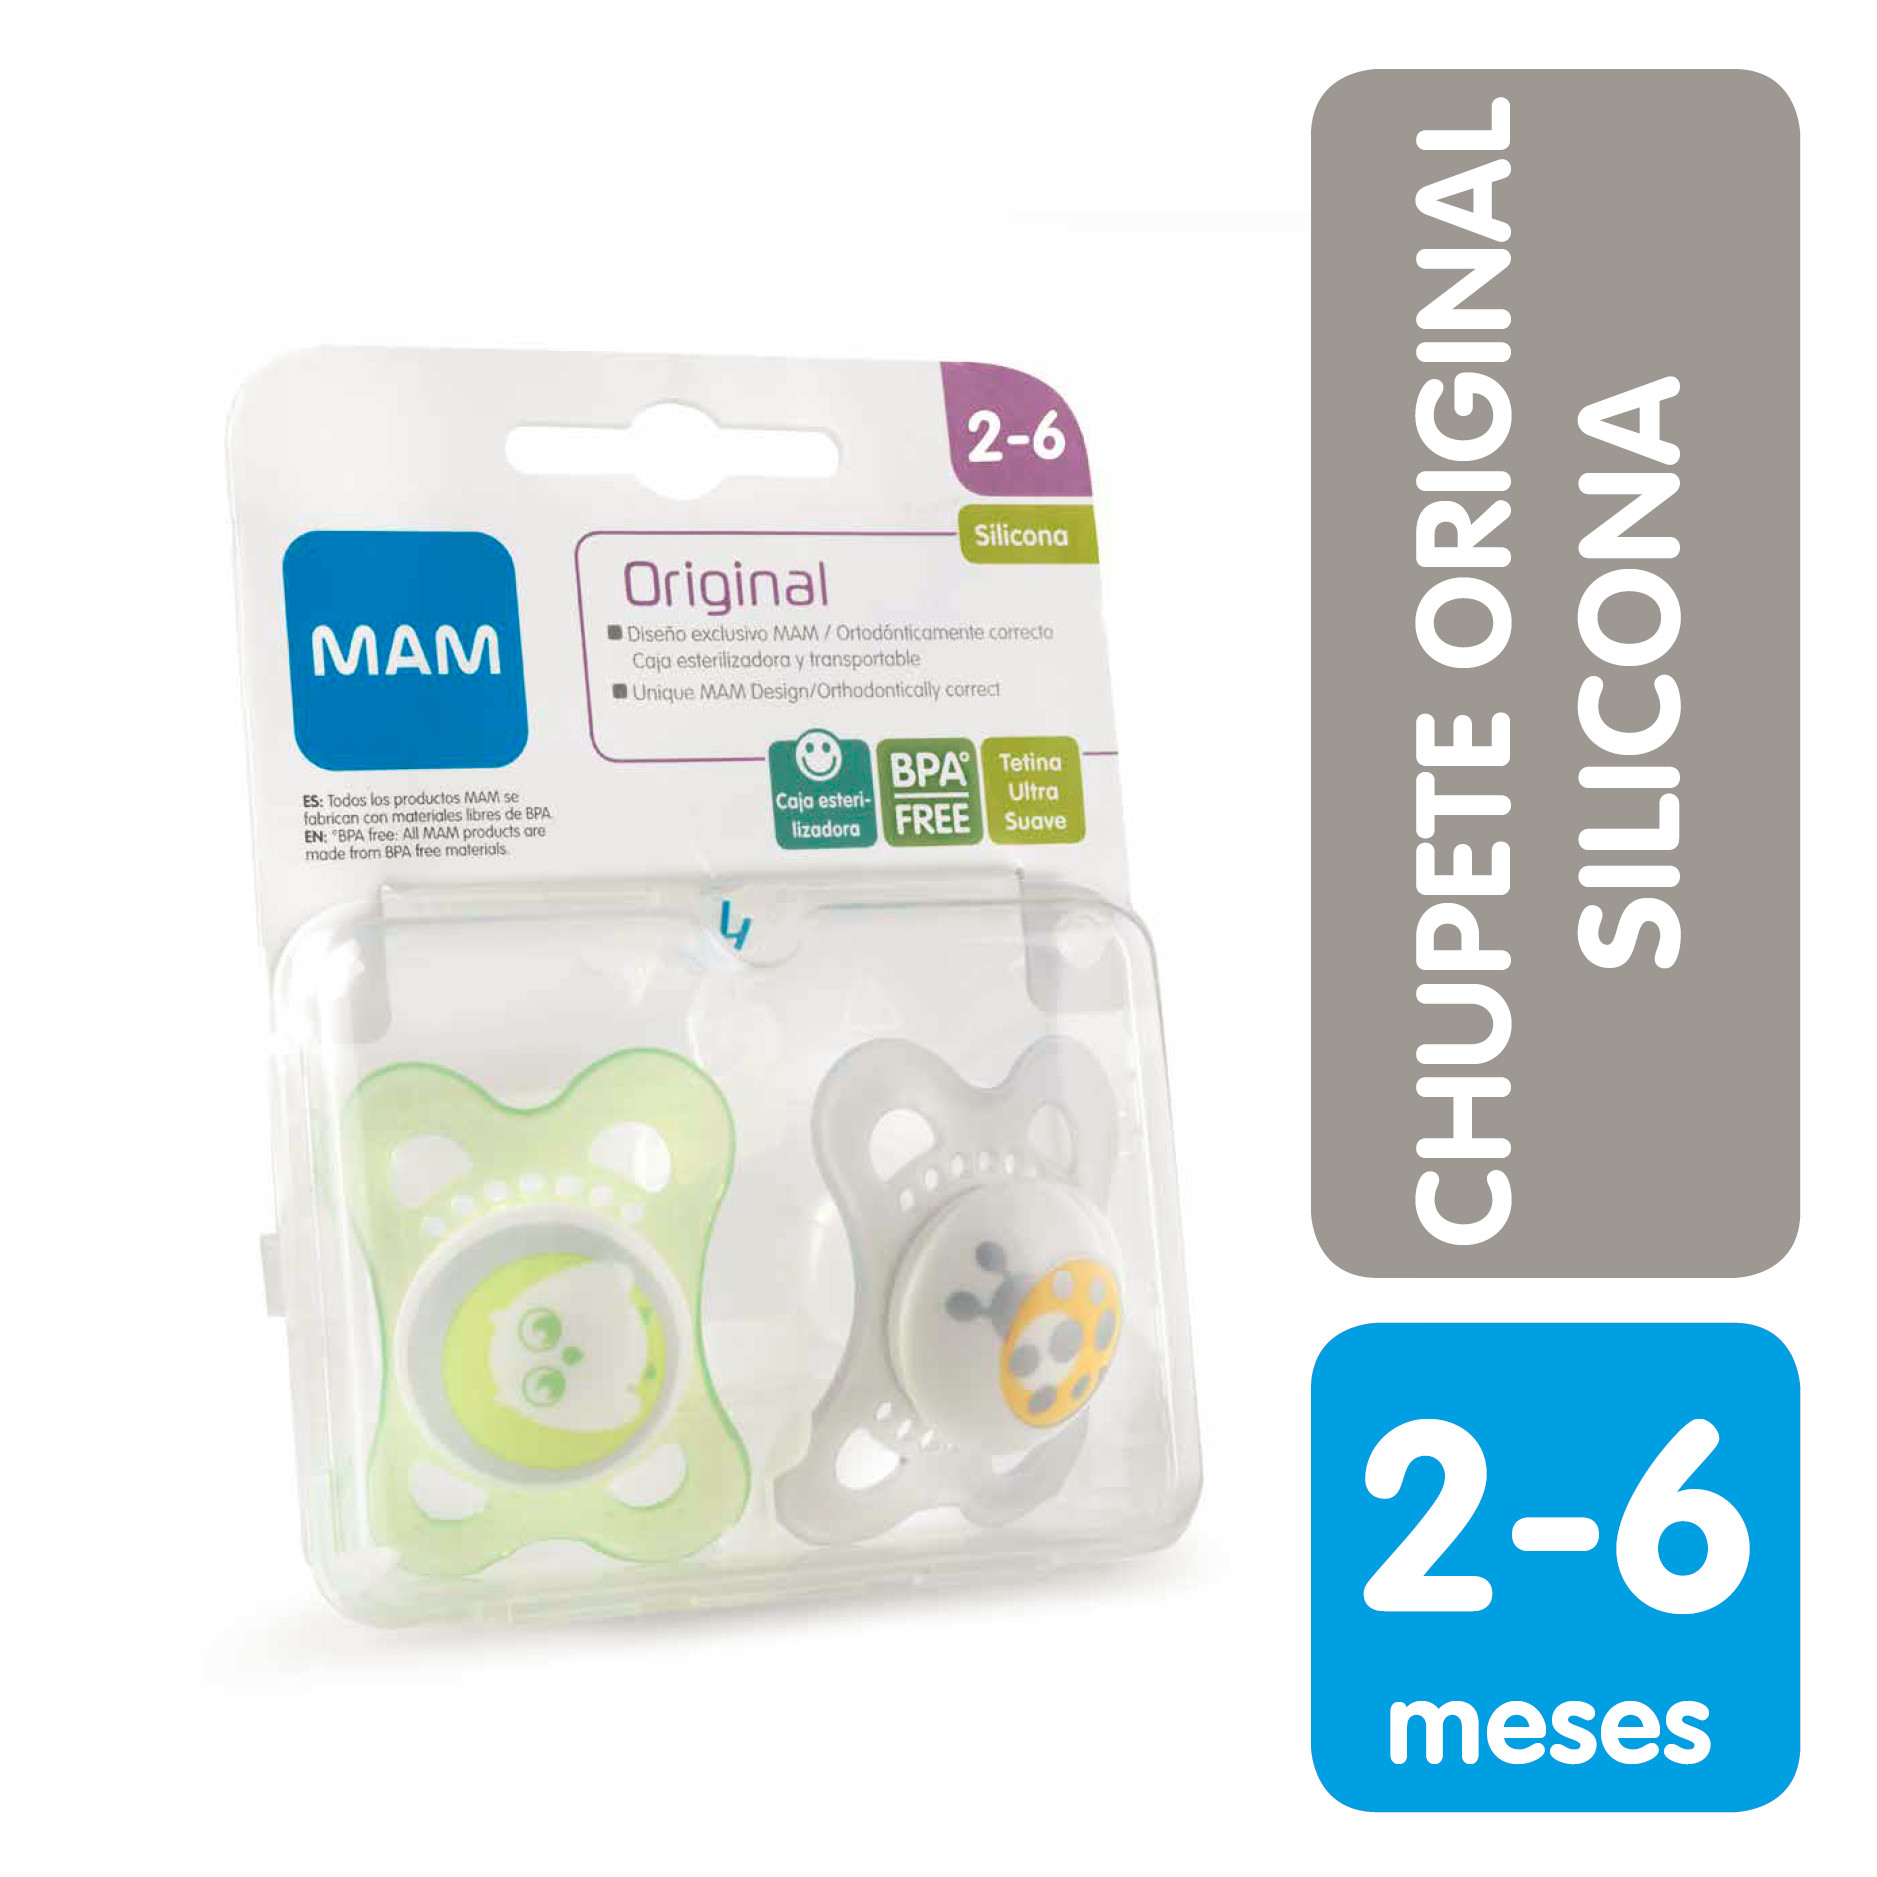 Mam Chupete x2 Original 2-6 Silicona - Laboratorio Chile